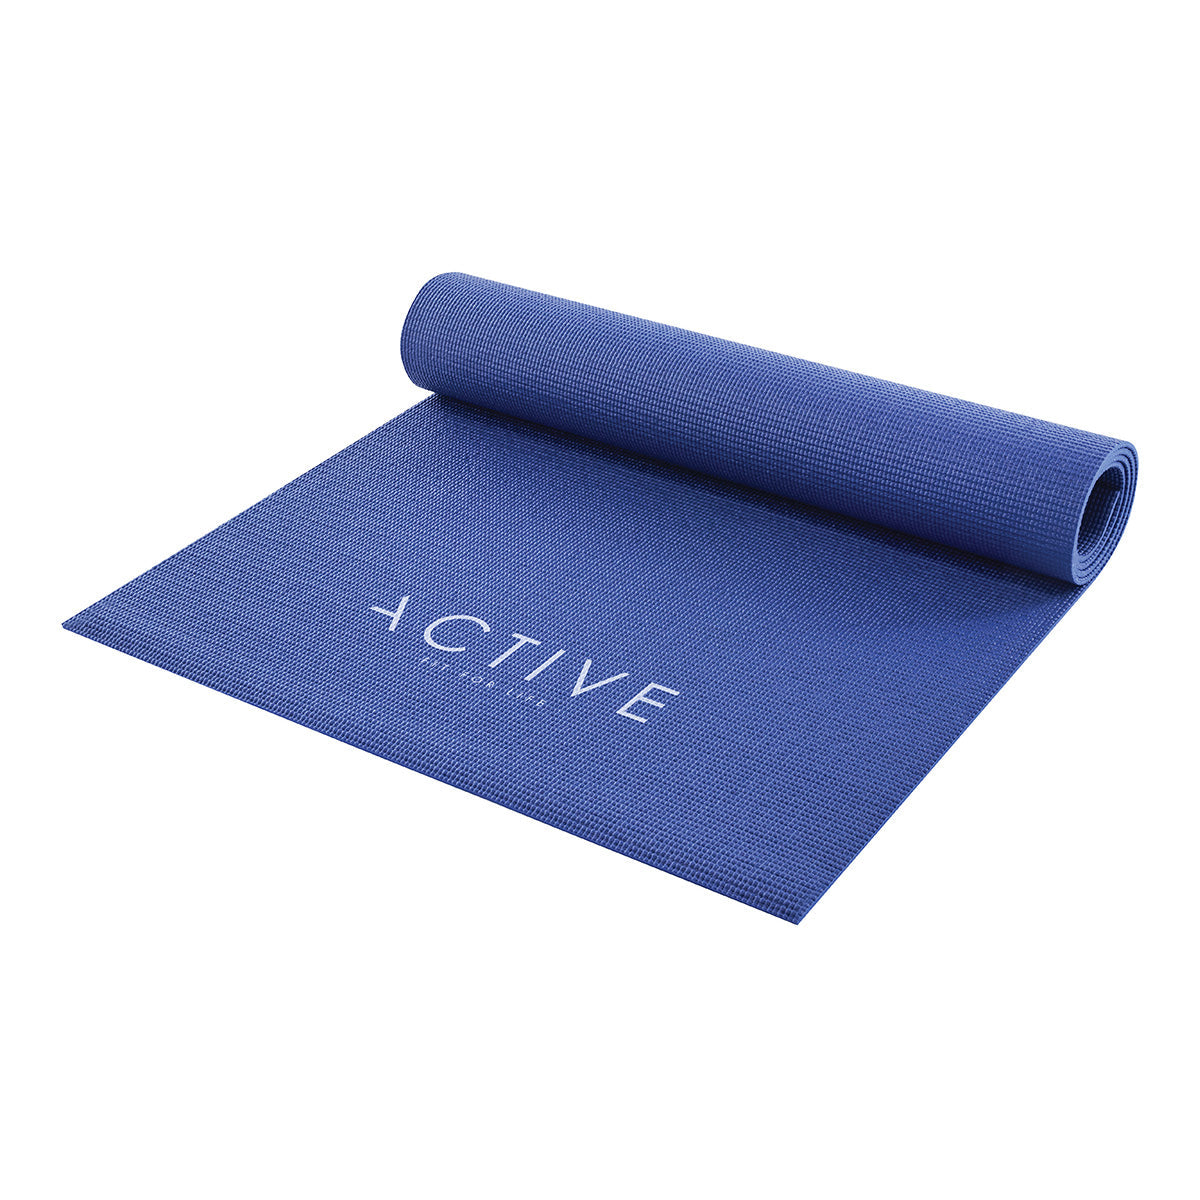 Active yoga mat 01